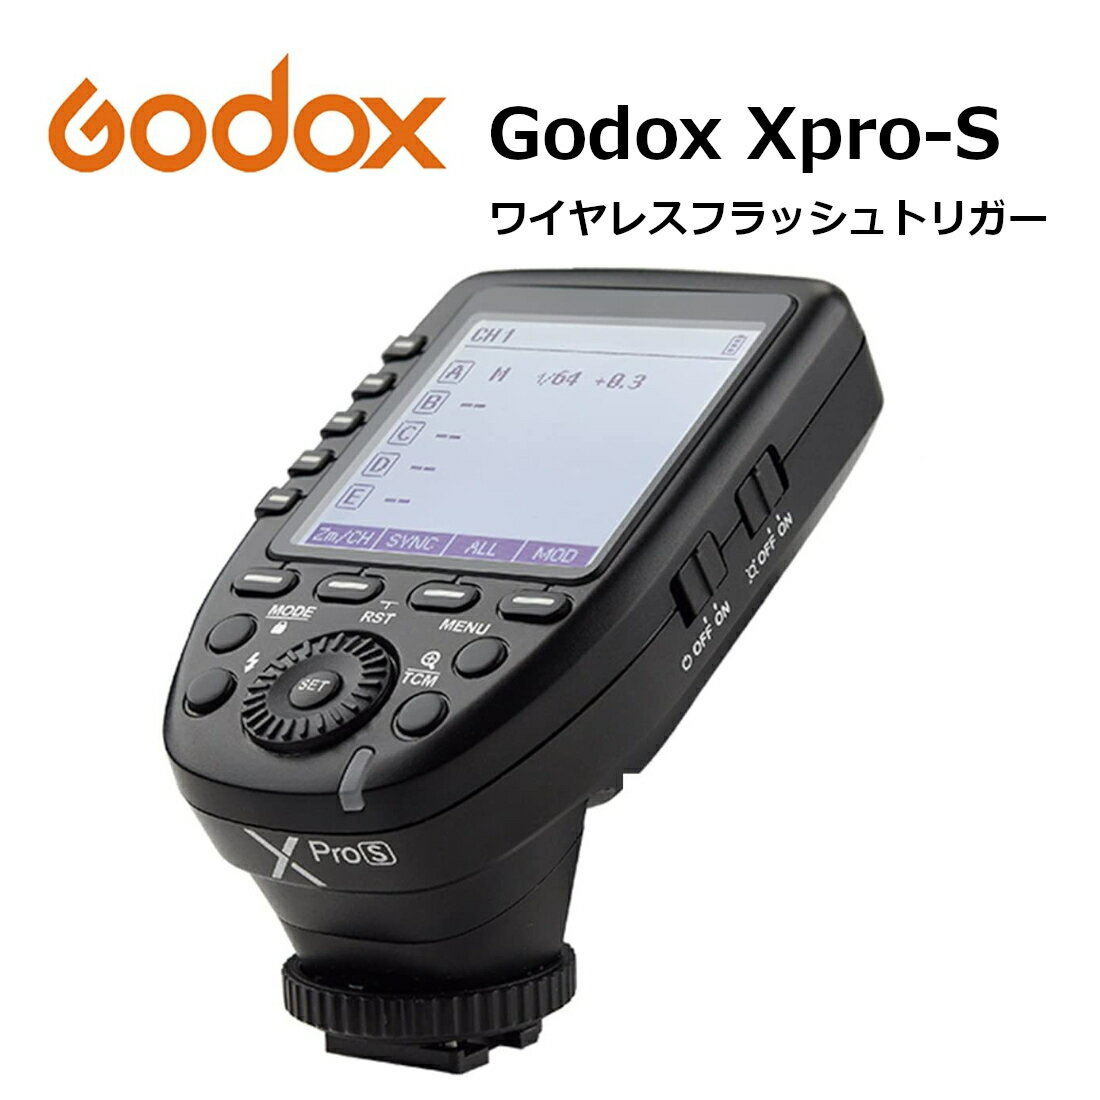 【あす楽対応 技適マーク 日本語説明書付】日本正規代理店 Godox Xpro-S 送信機 TTL 2.4Gワイヤレスフラッシュトリガー 高速同期 1/8000s 大画面 LCD スクリーントランスミッタ 互換性 Sony ソニー カメラ用